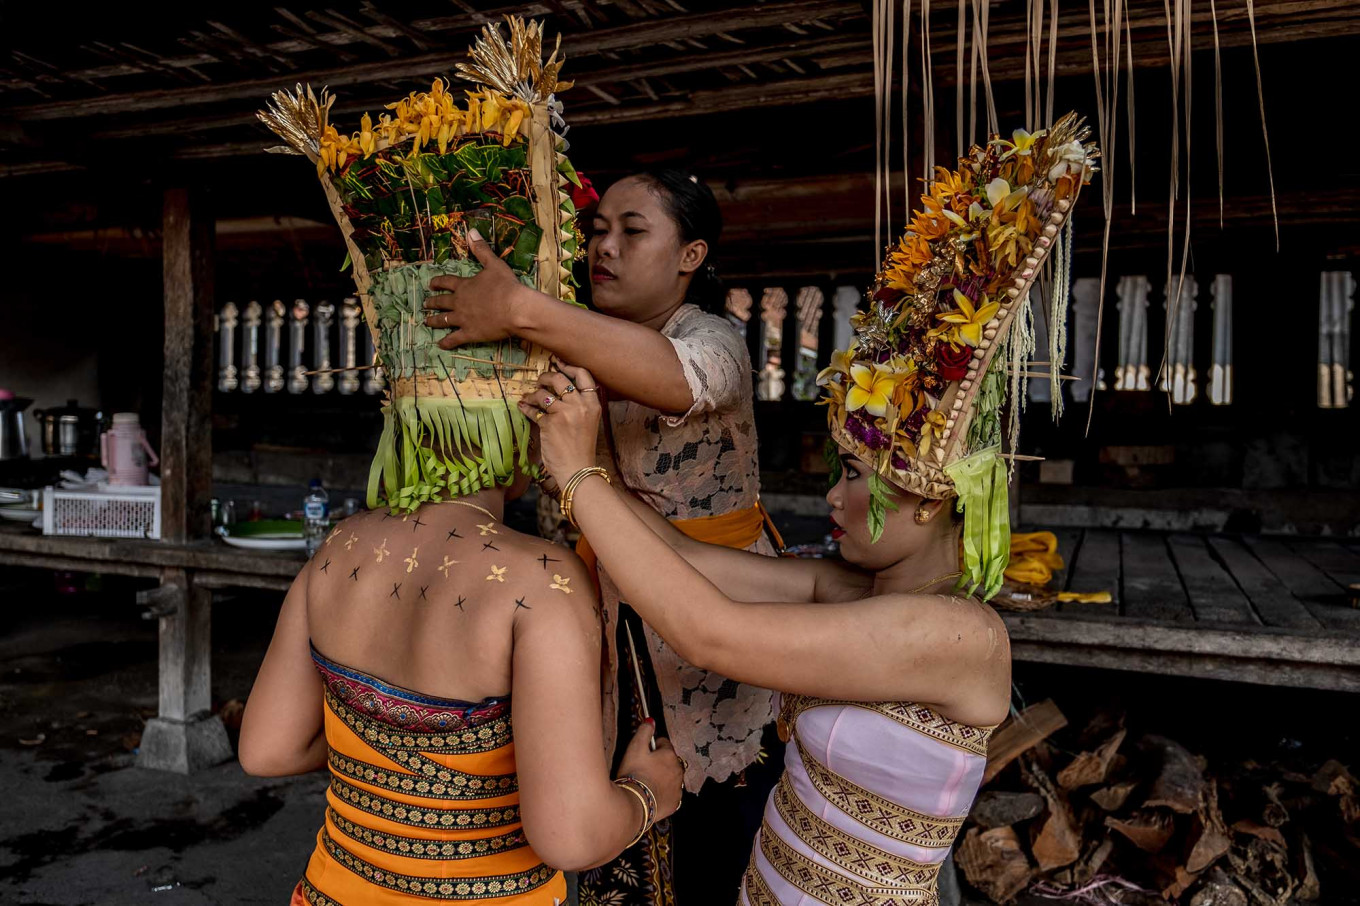 Para penari mengenakan hiasan kepala yang terbuat dari anyaman daun kelapa yang disebut gelungan dan dihiasi dengan bunga | Foto: Agung Prameswara / Jakarta Post